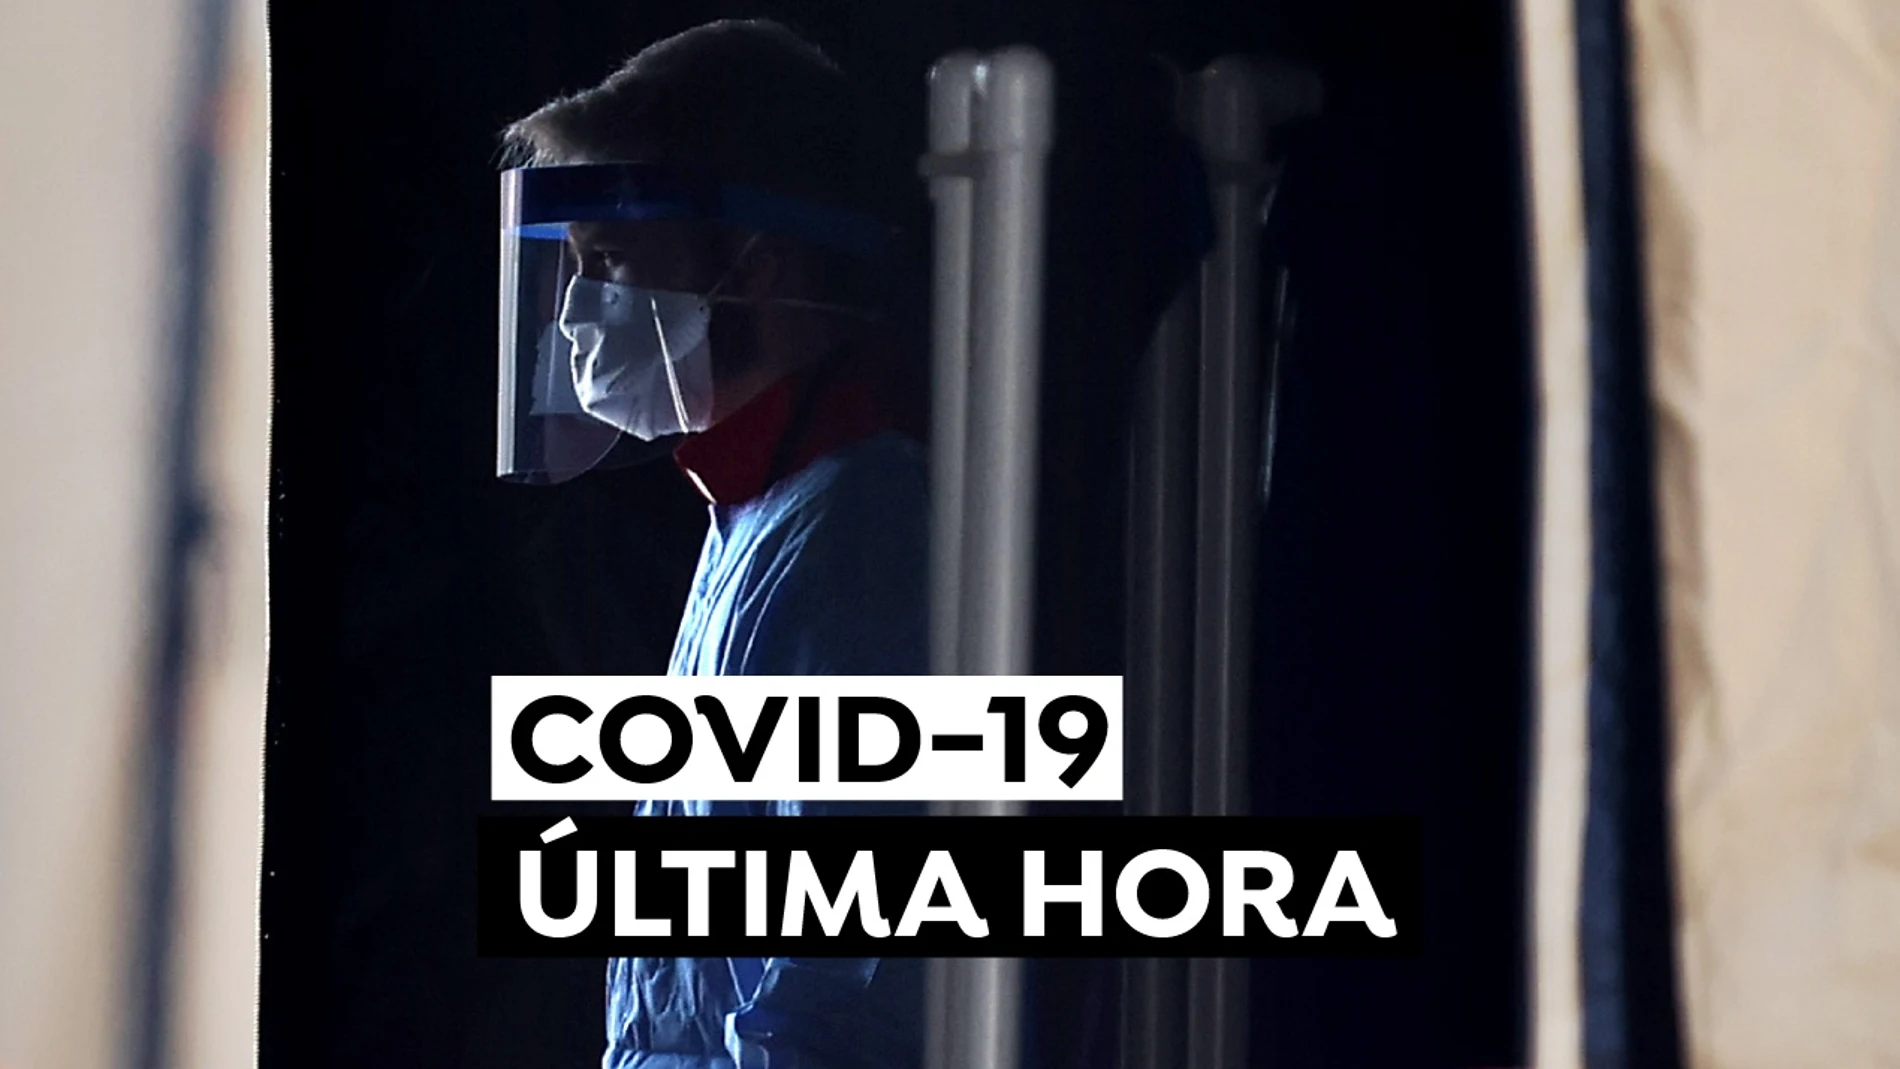 Coronavirus España hoy: Última hora del COVID-19